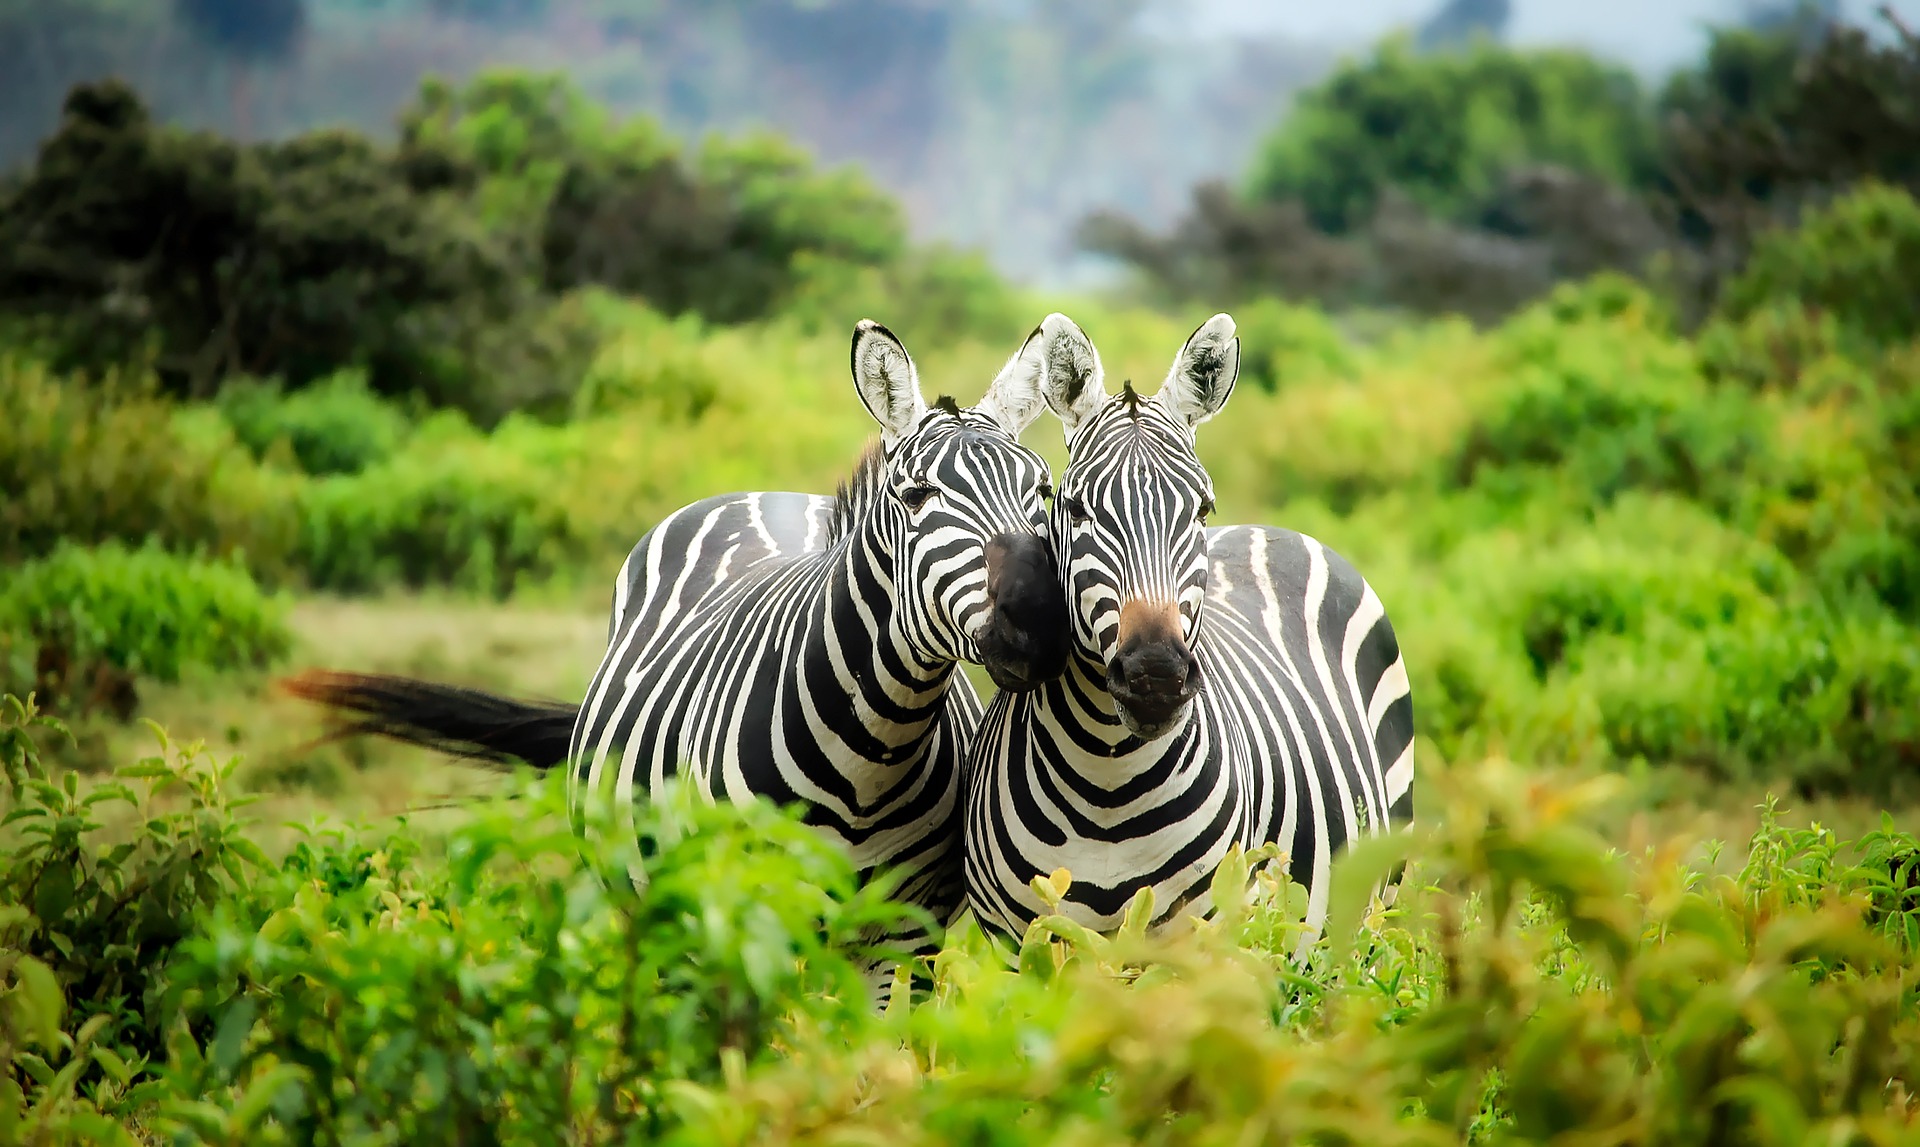 Voyage : quel pays pour un safari photo en Afrique ?